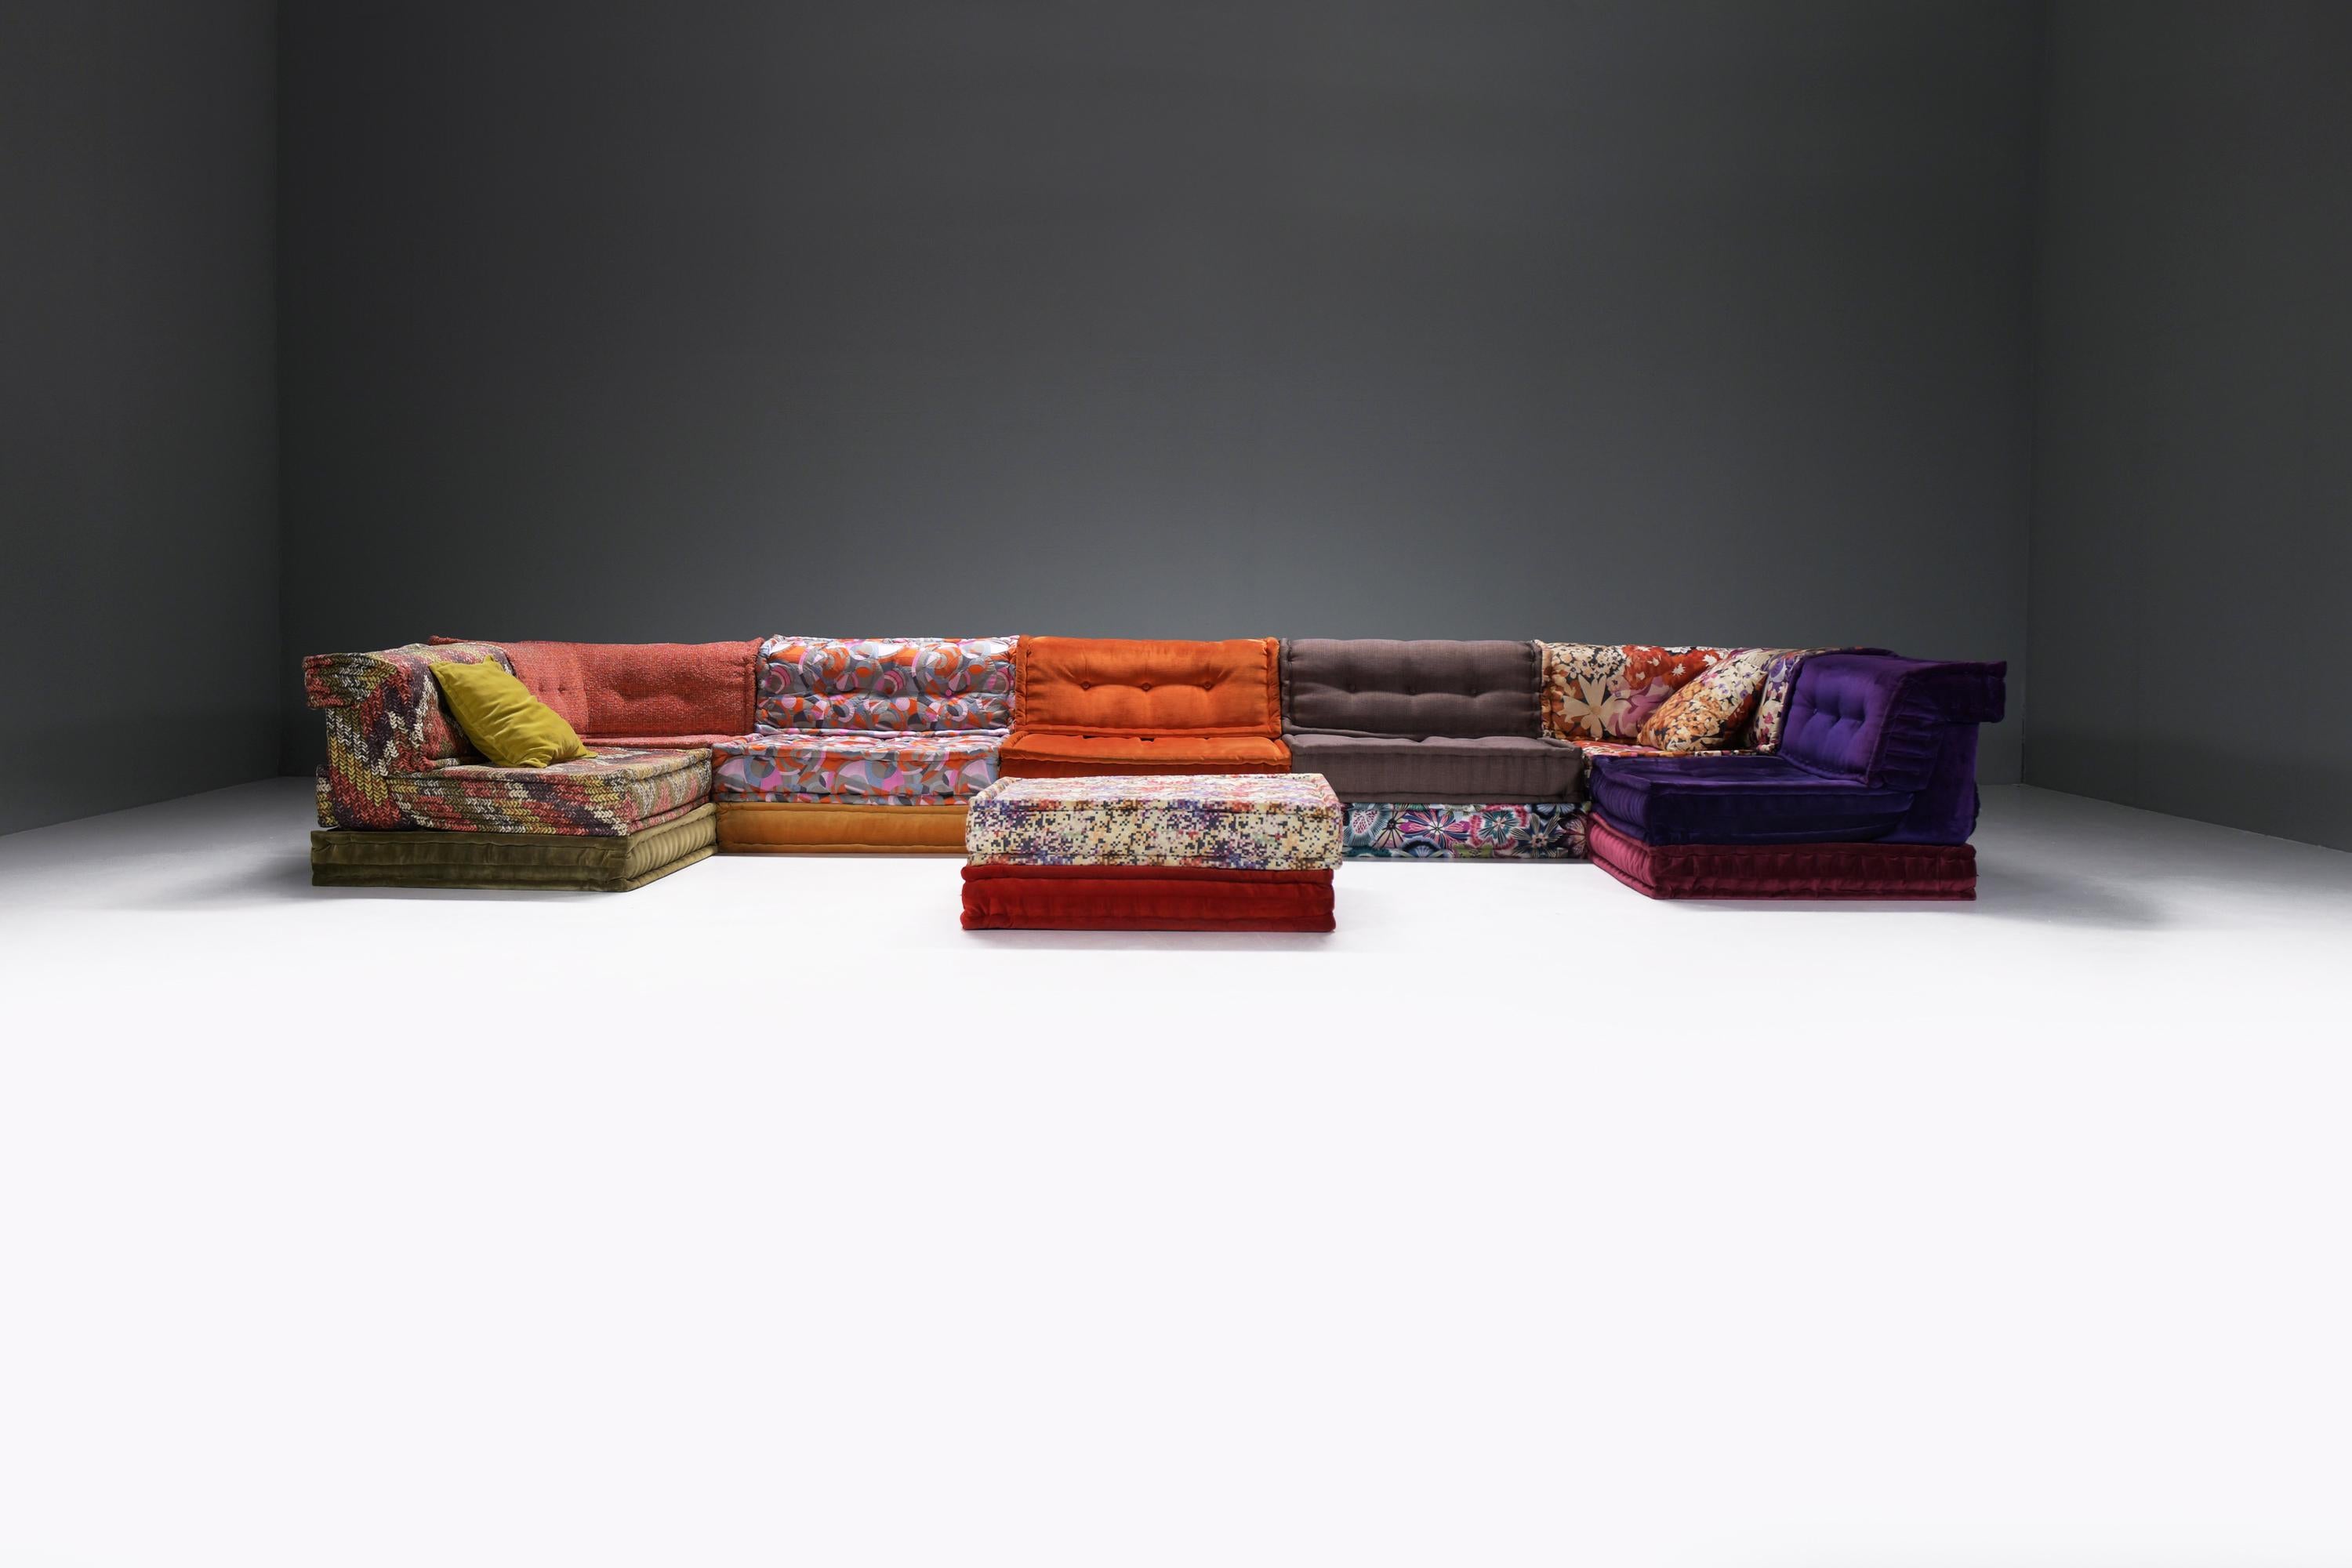 Très beau et grand canapé modulable Mah Jong en tissu Missoni !  Des couleurs étonnantes !
Conçu par Hans Hopfer pour Roche Bobois France.

Conçu par Hans Hopfer en 1971, le canapé Mah Jone est un modèle emblématique des collections Roche Bobois, et